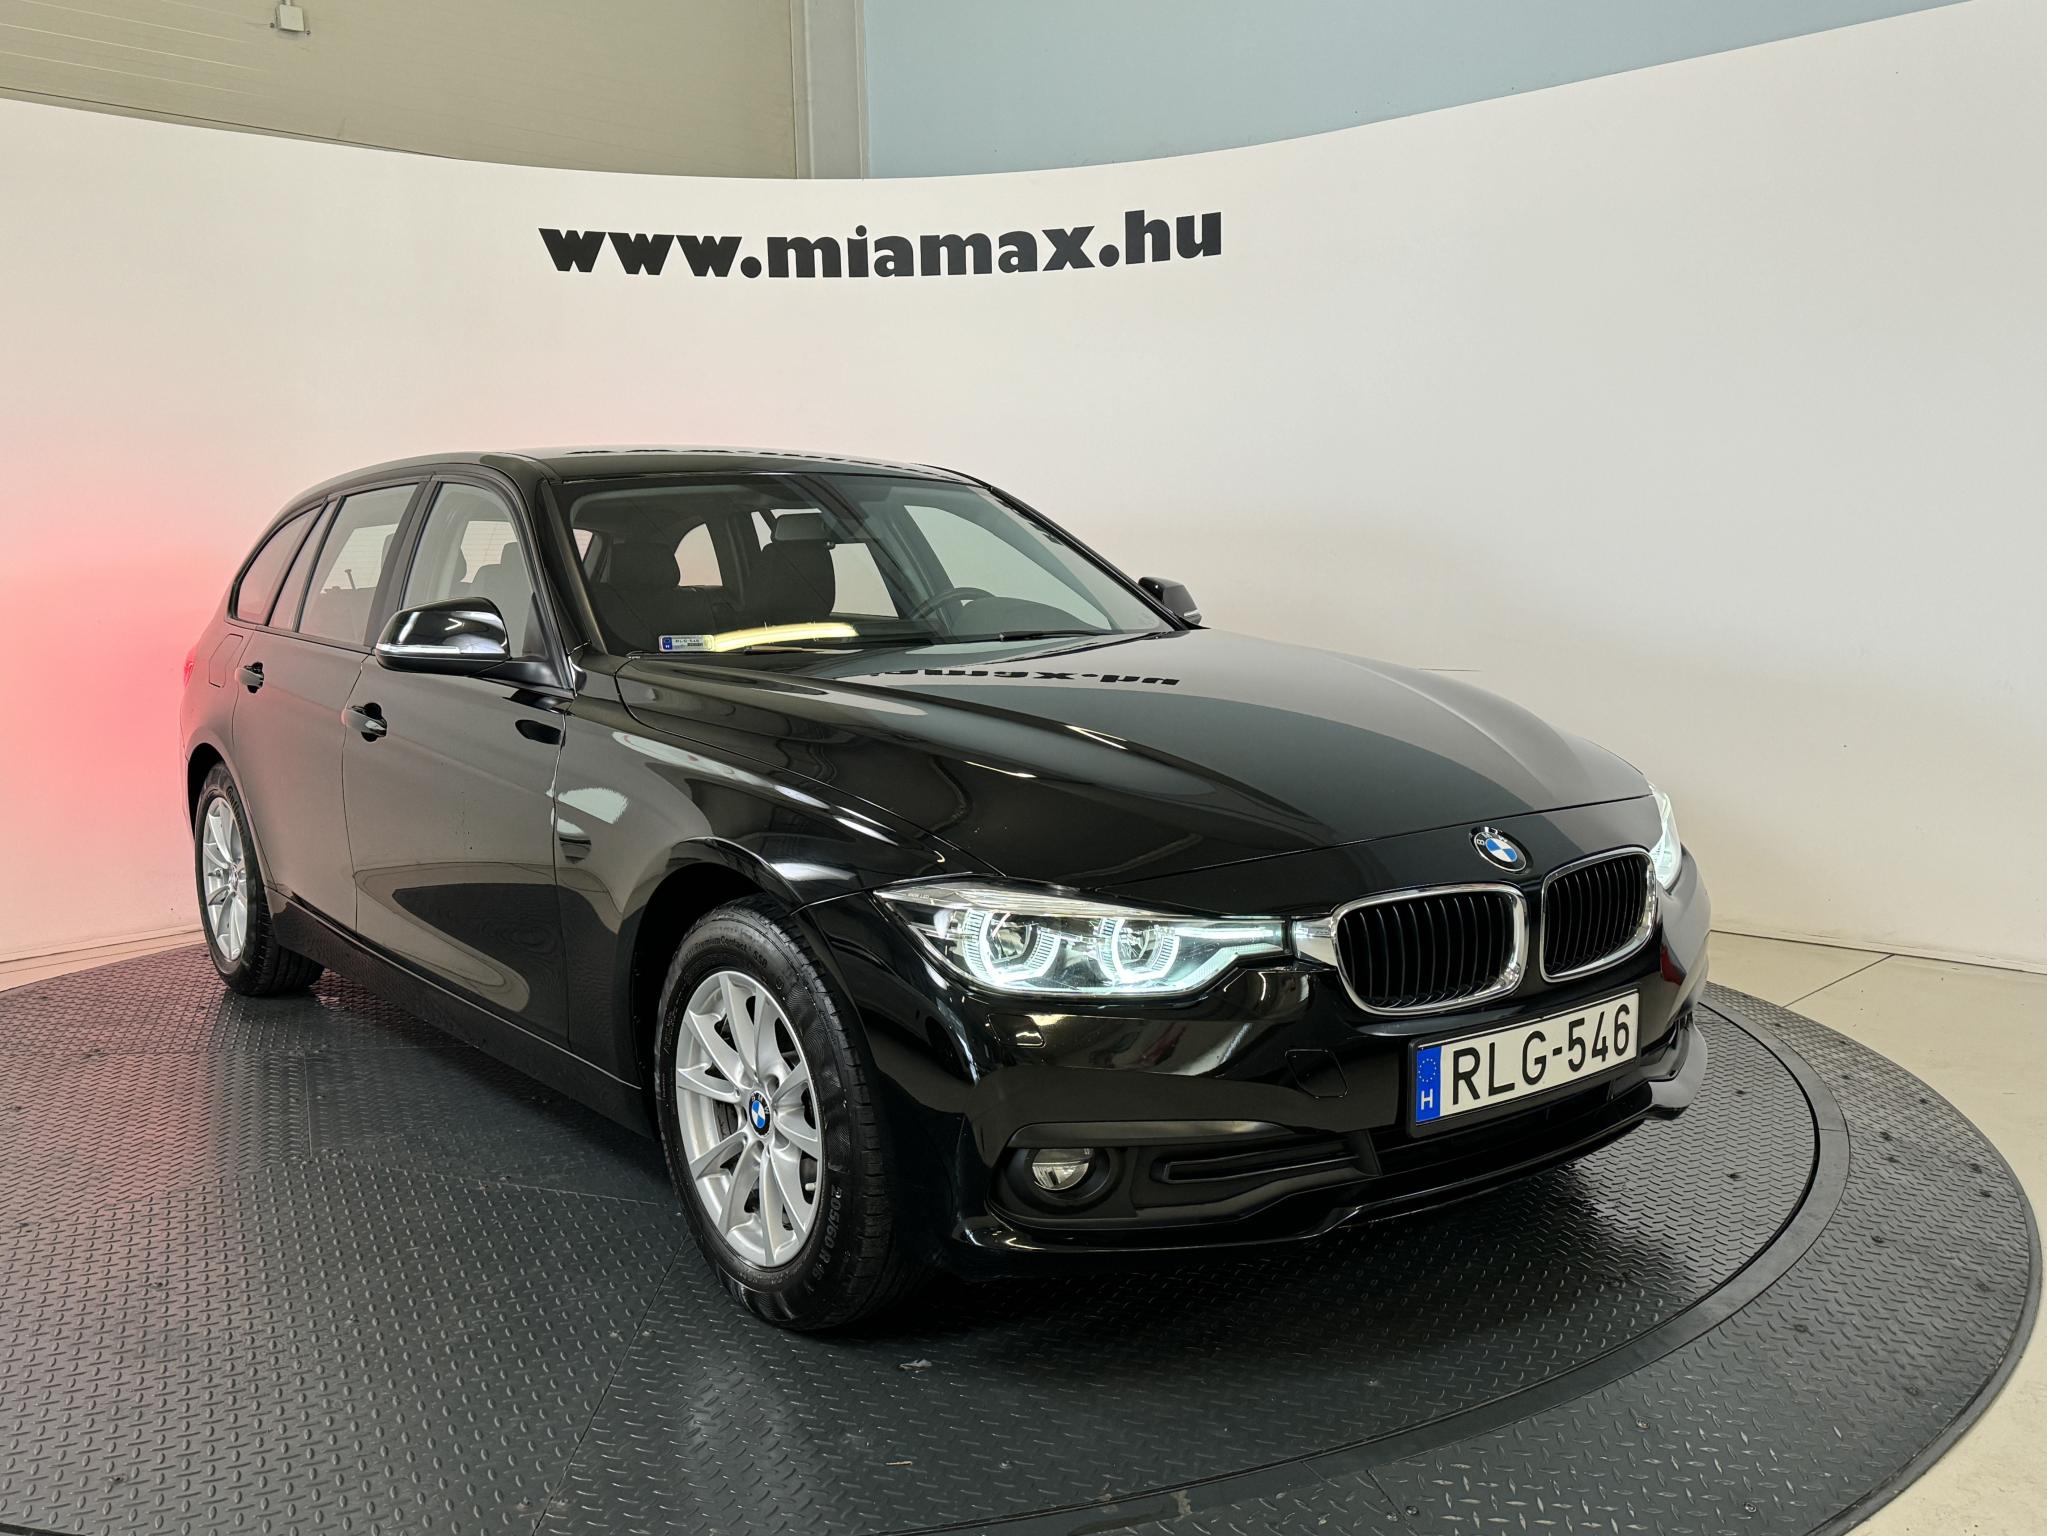 BMW 318d LED 131.509 km! magyar. 1 tulaj. gyári fényezésű. vezetett szervizkönyves. ÁFA-s